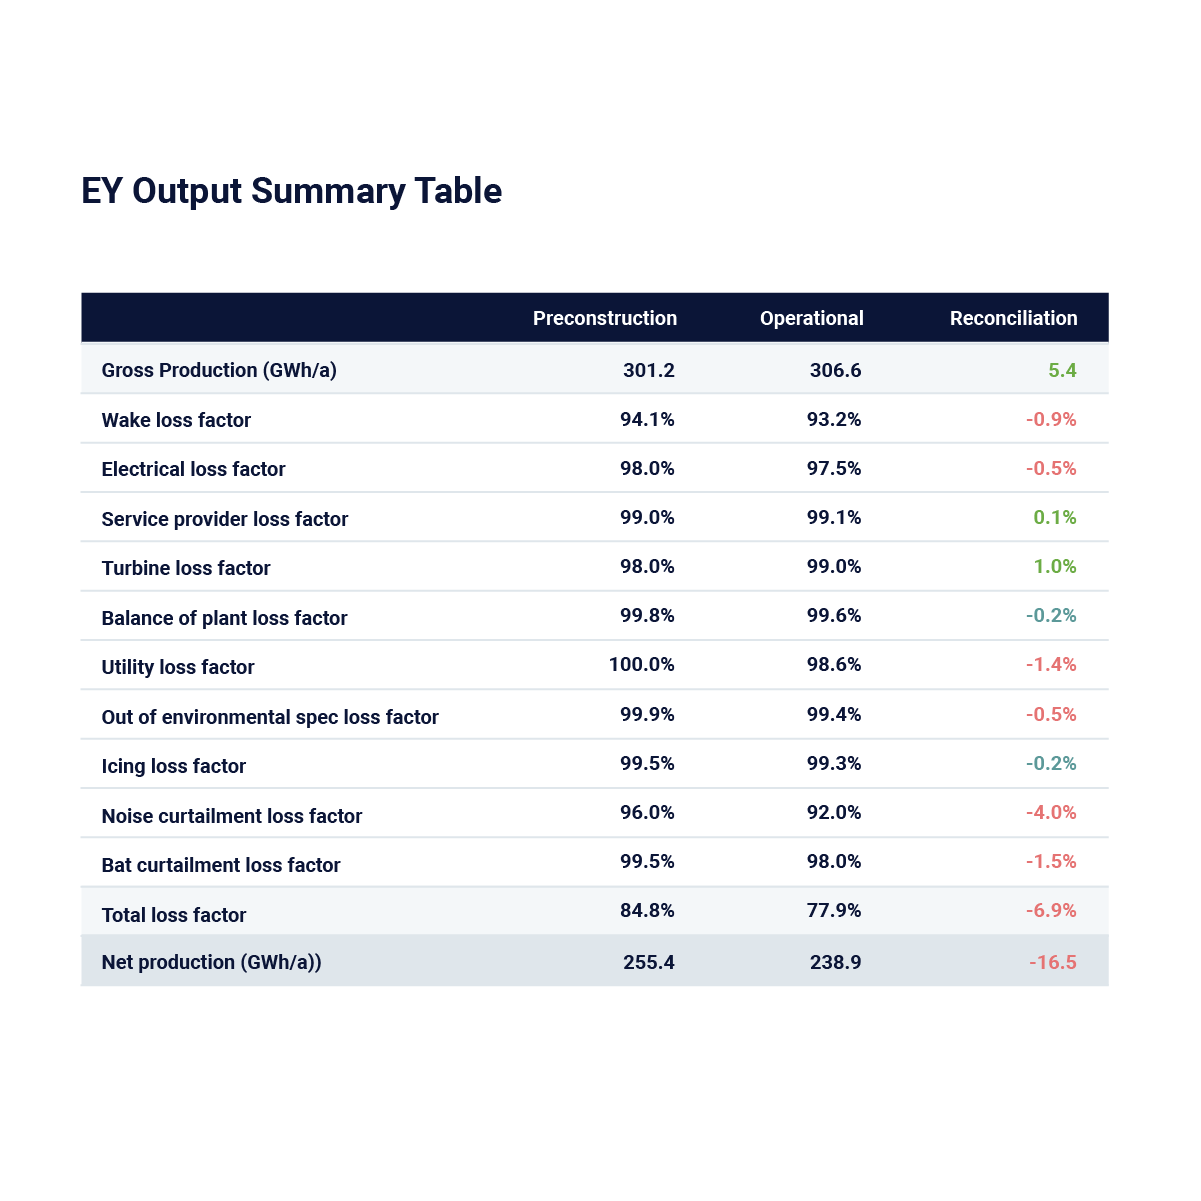 Energy yield output summary table